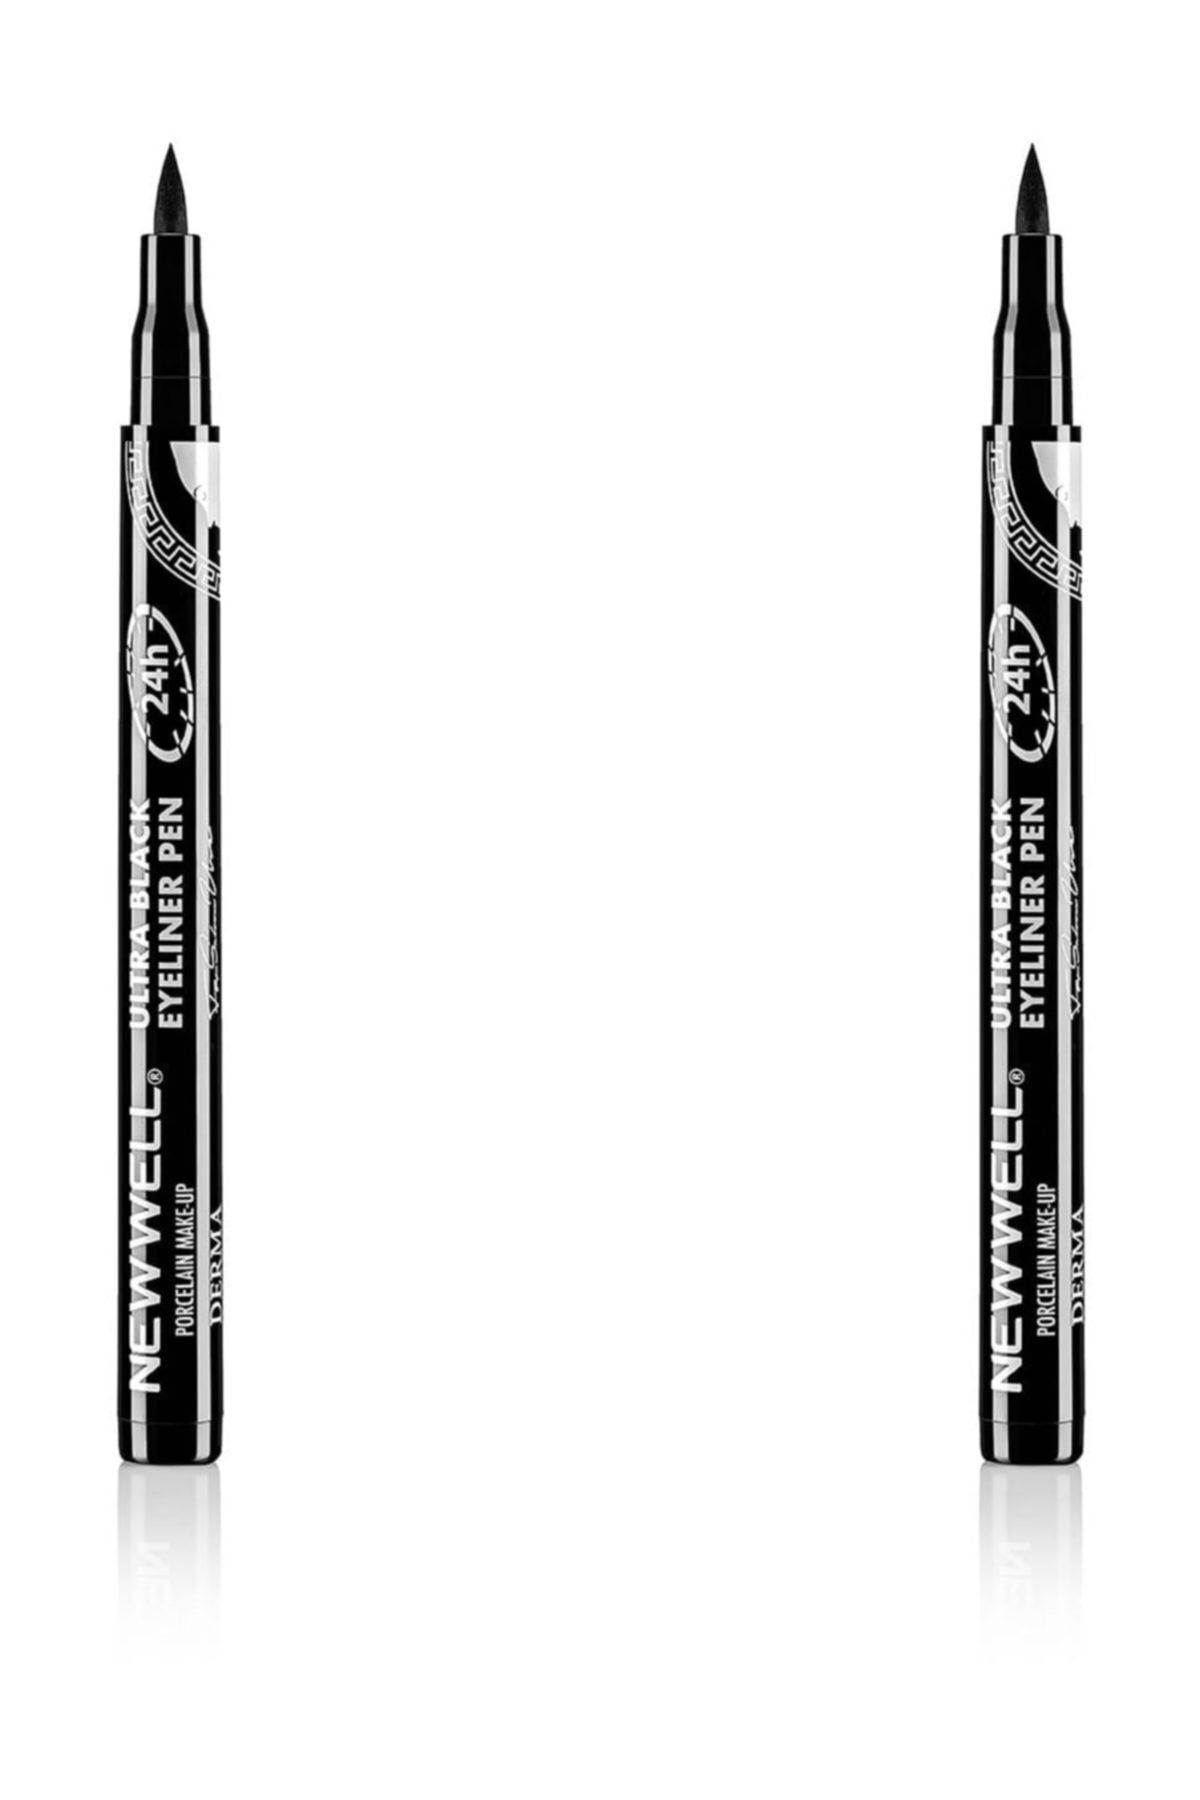 New Well Ultra Black Eyeliner Pen 8680097213327 X 2 Adet